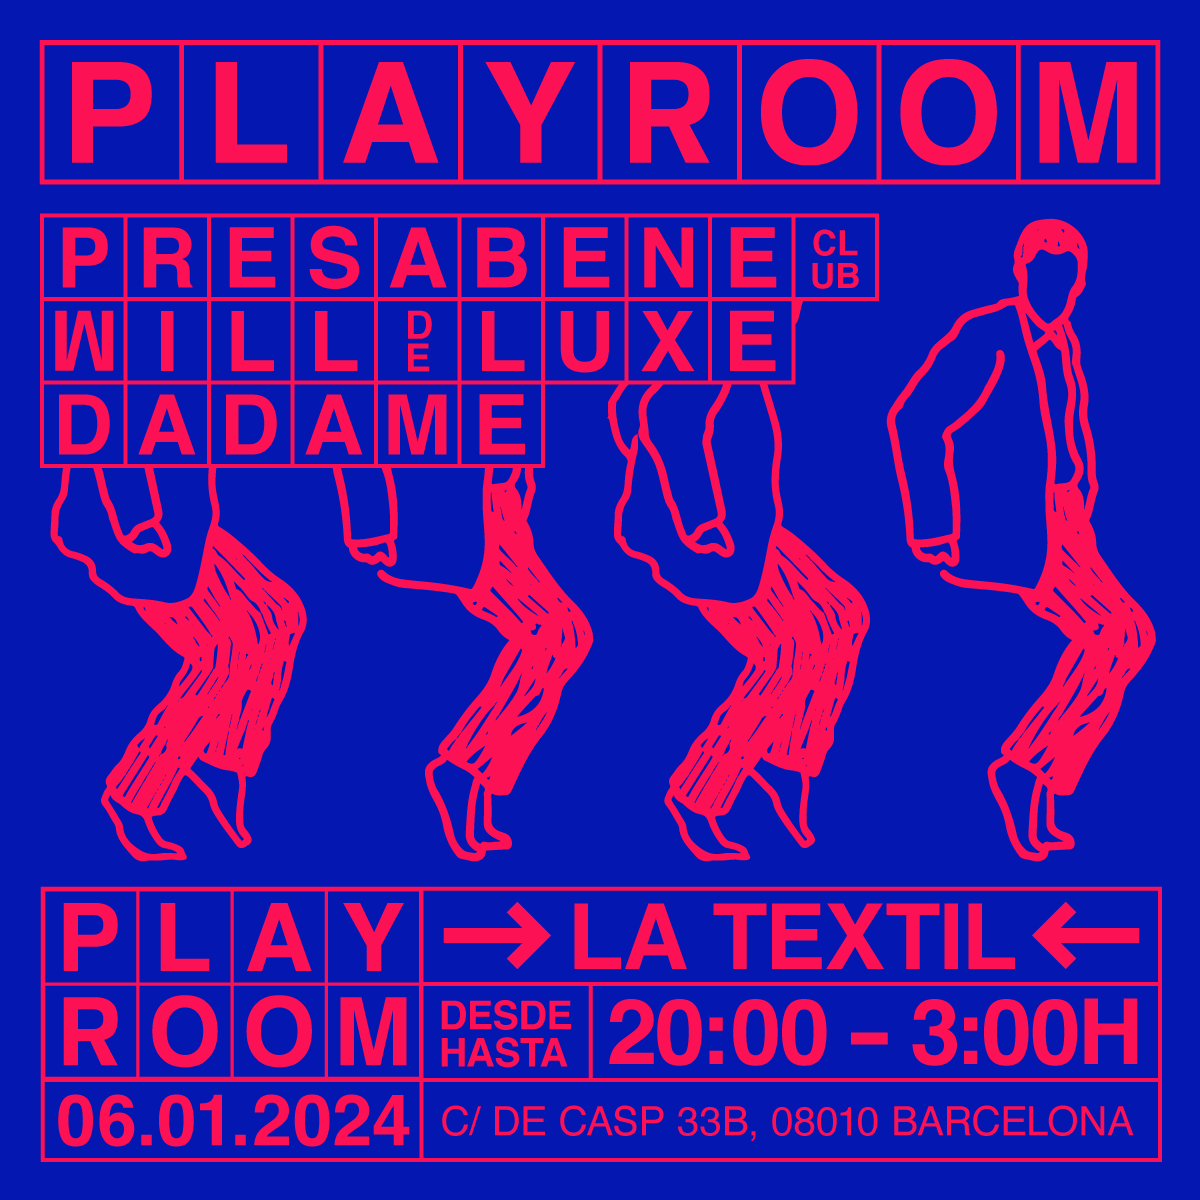 Playroom presents Presa Bene at La Textil - フライヤー表